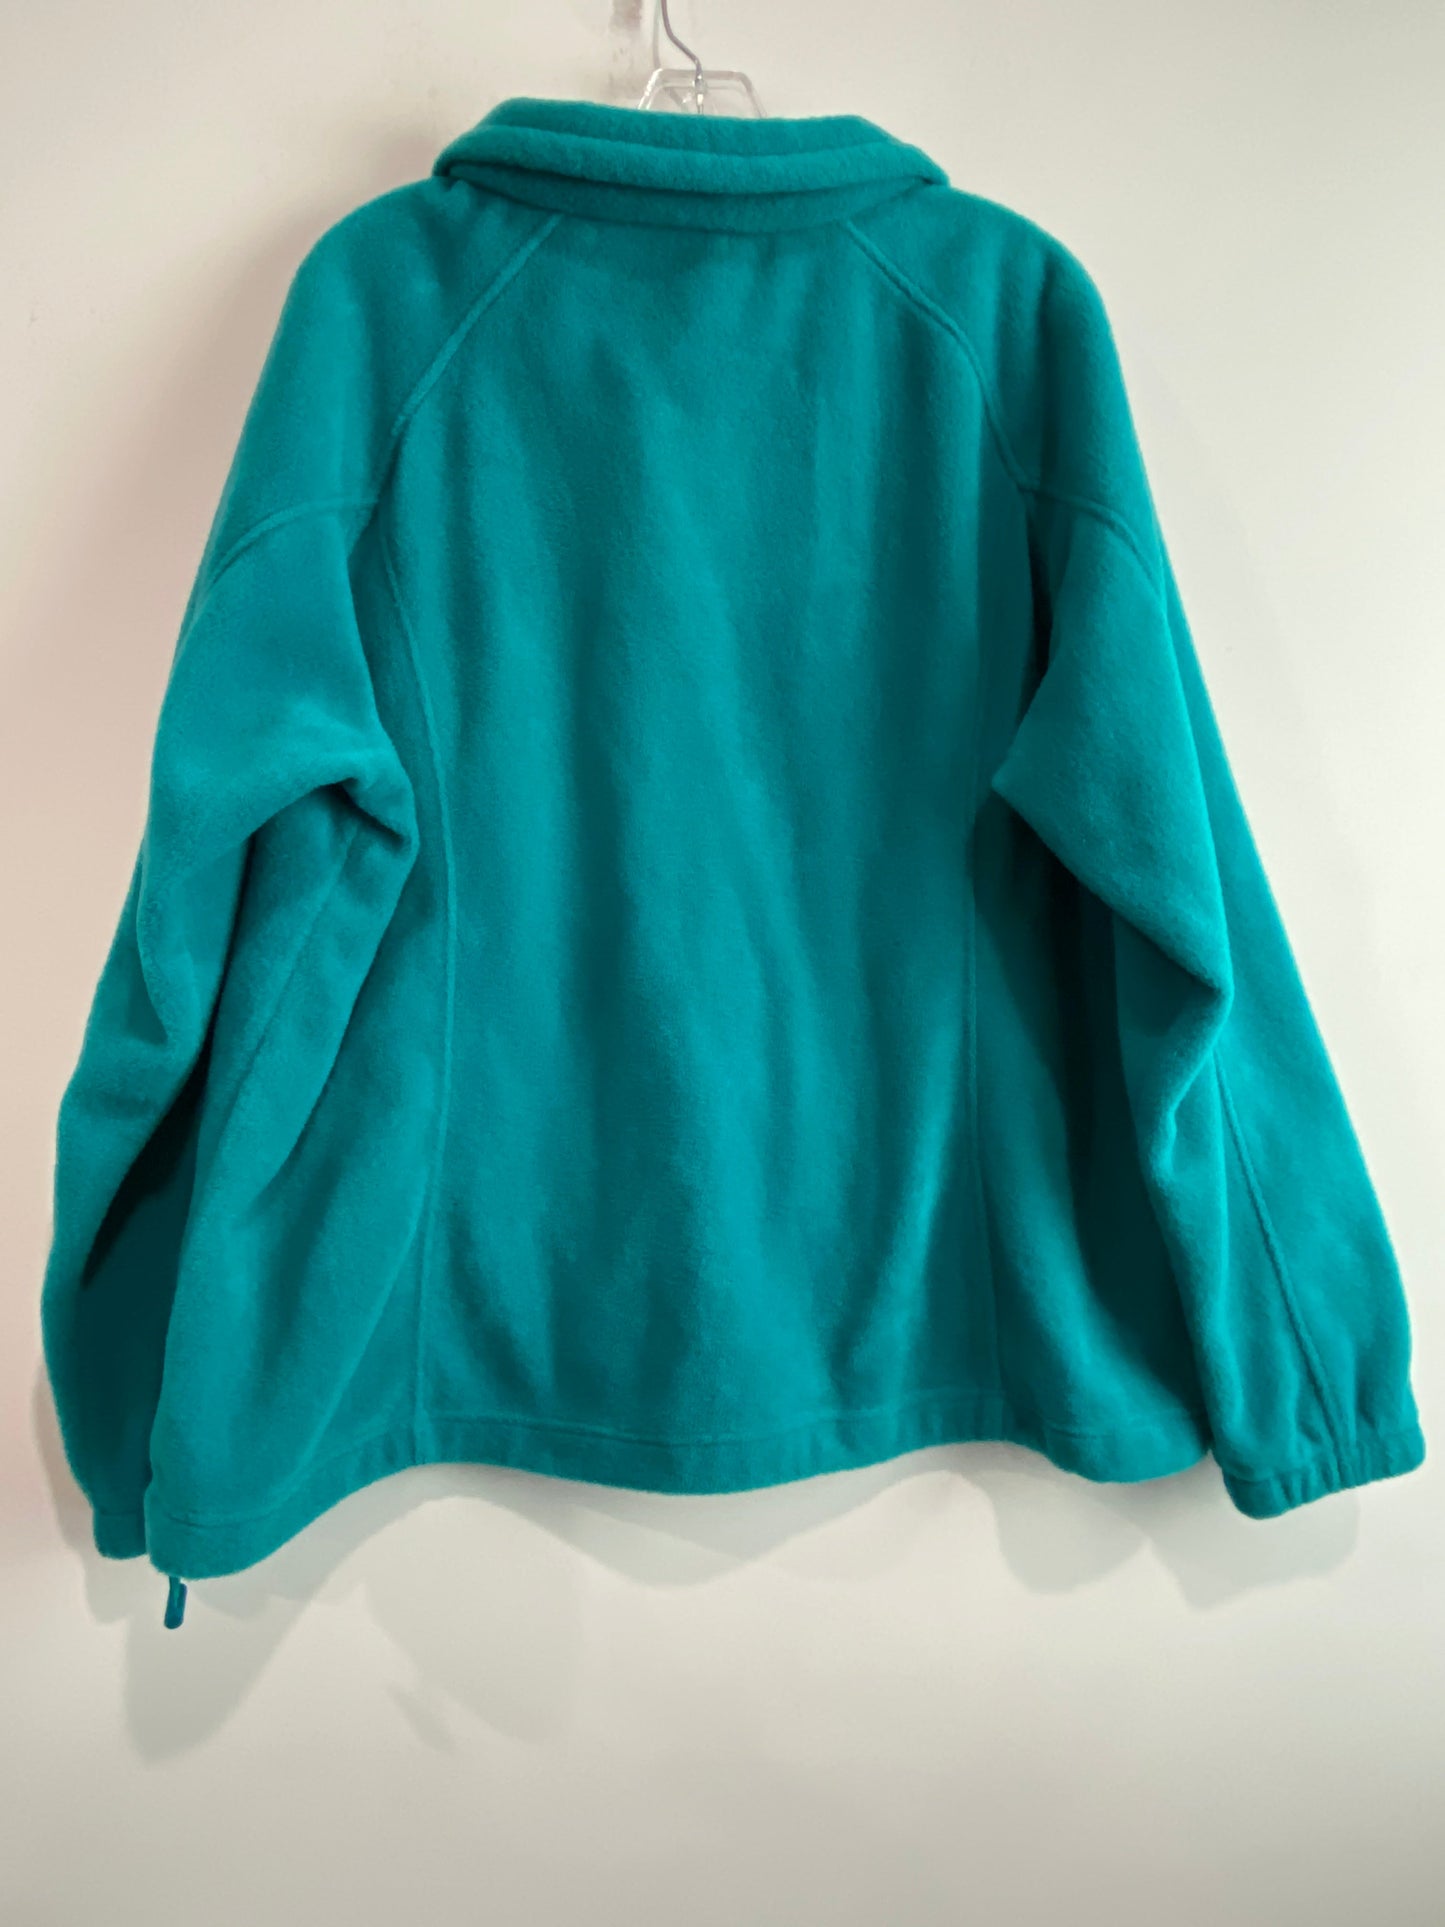 Green Jacket Fleece Columbia, Size 2x